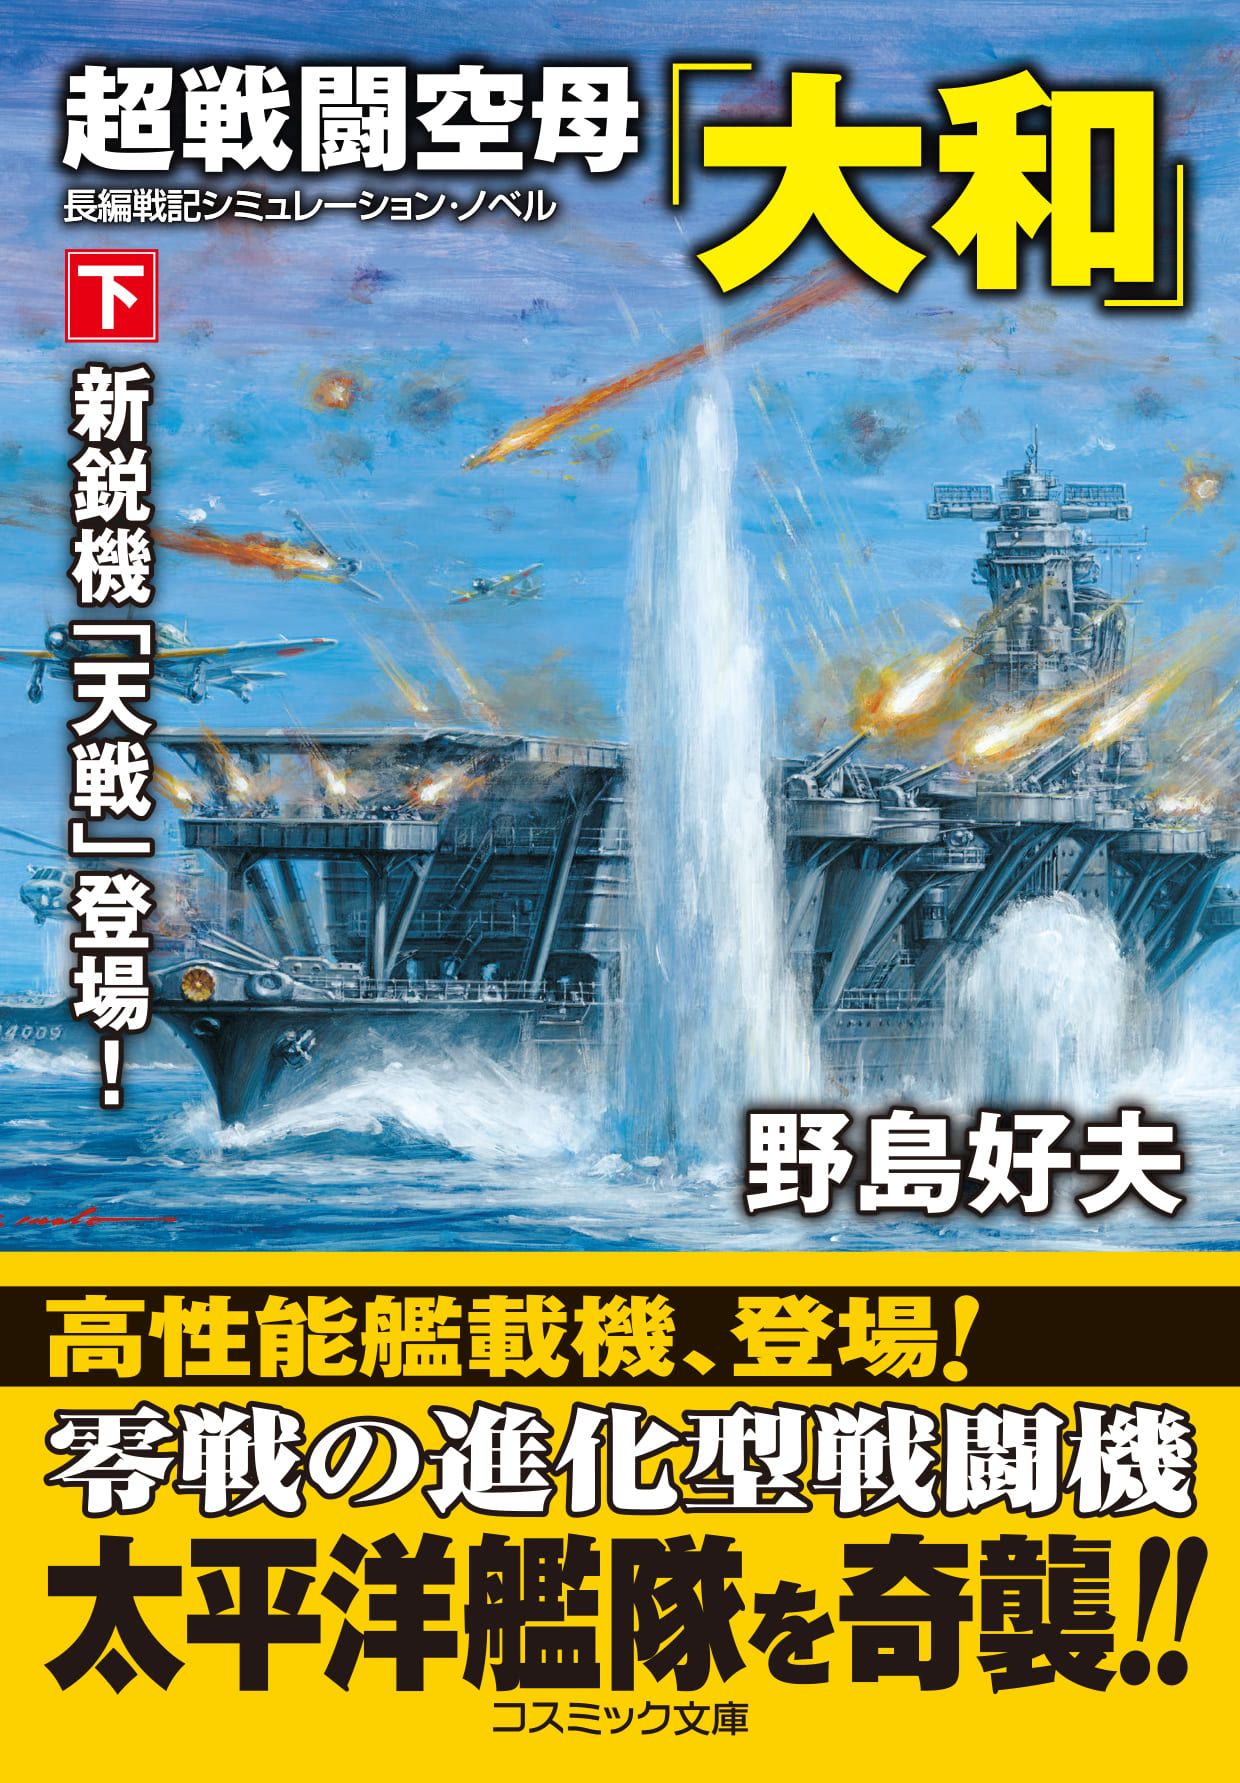 超戦闘空母「大和」(書籍) - 電子書籍 | U-NEXT 初回600円分無料